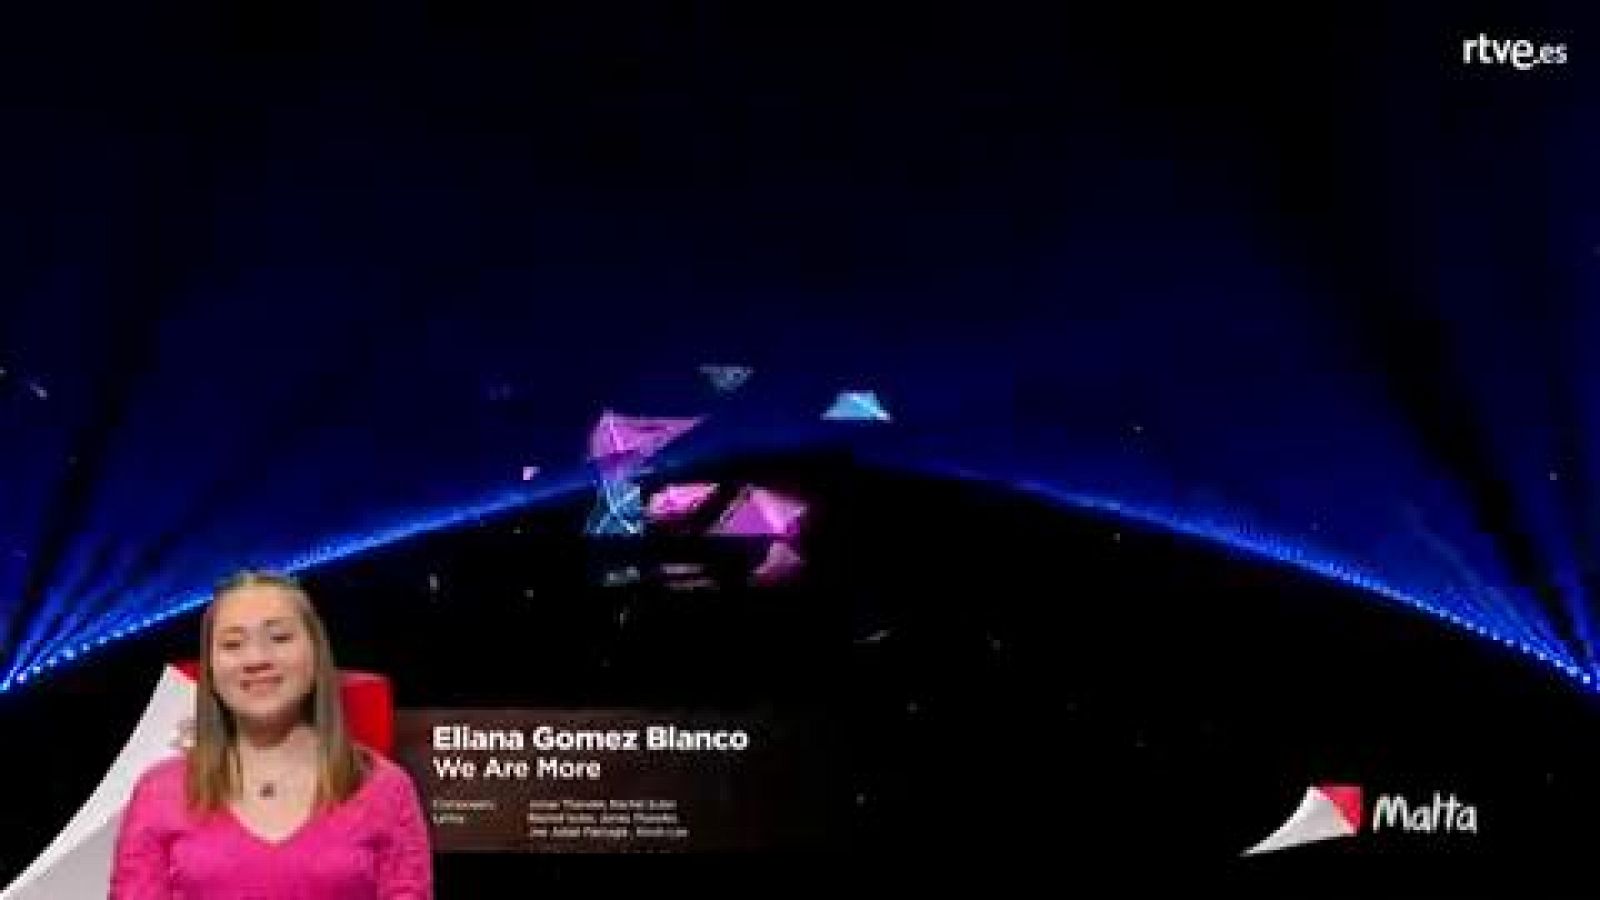 Eurovisión Junior 2019 - Eliana Gómez Blanco de Malta canta "We are more"